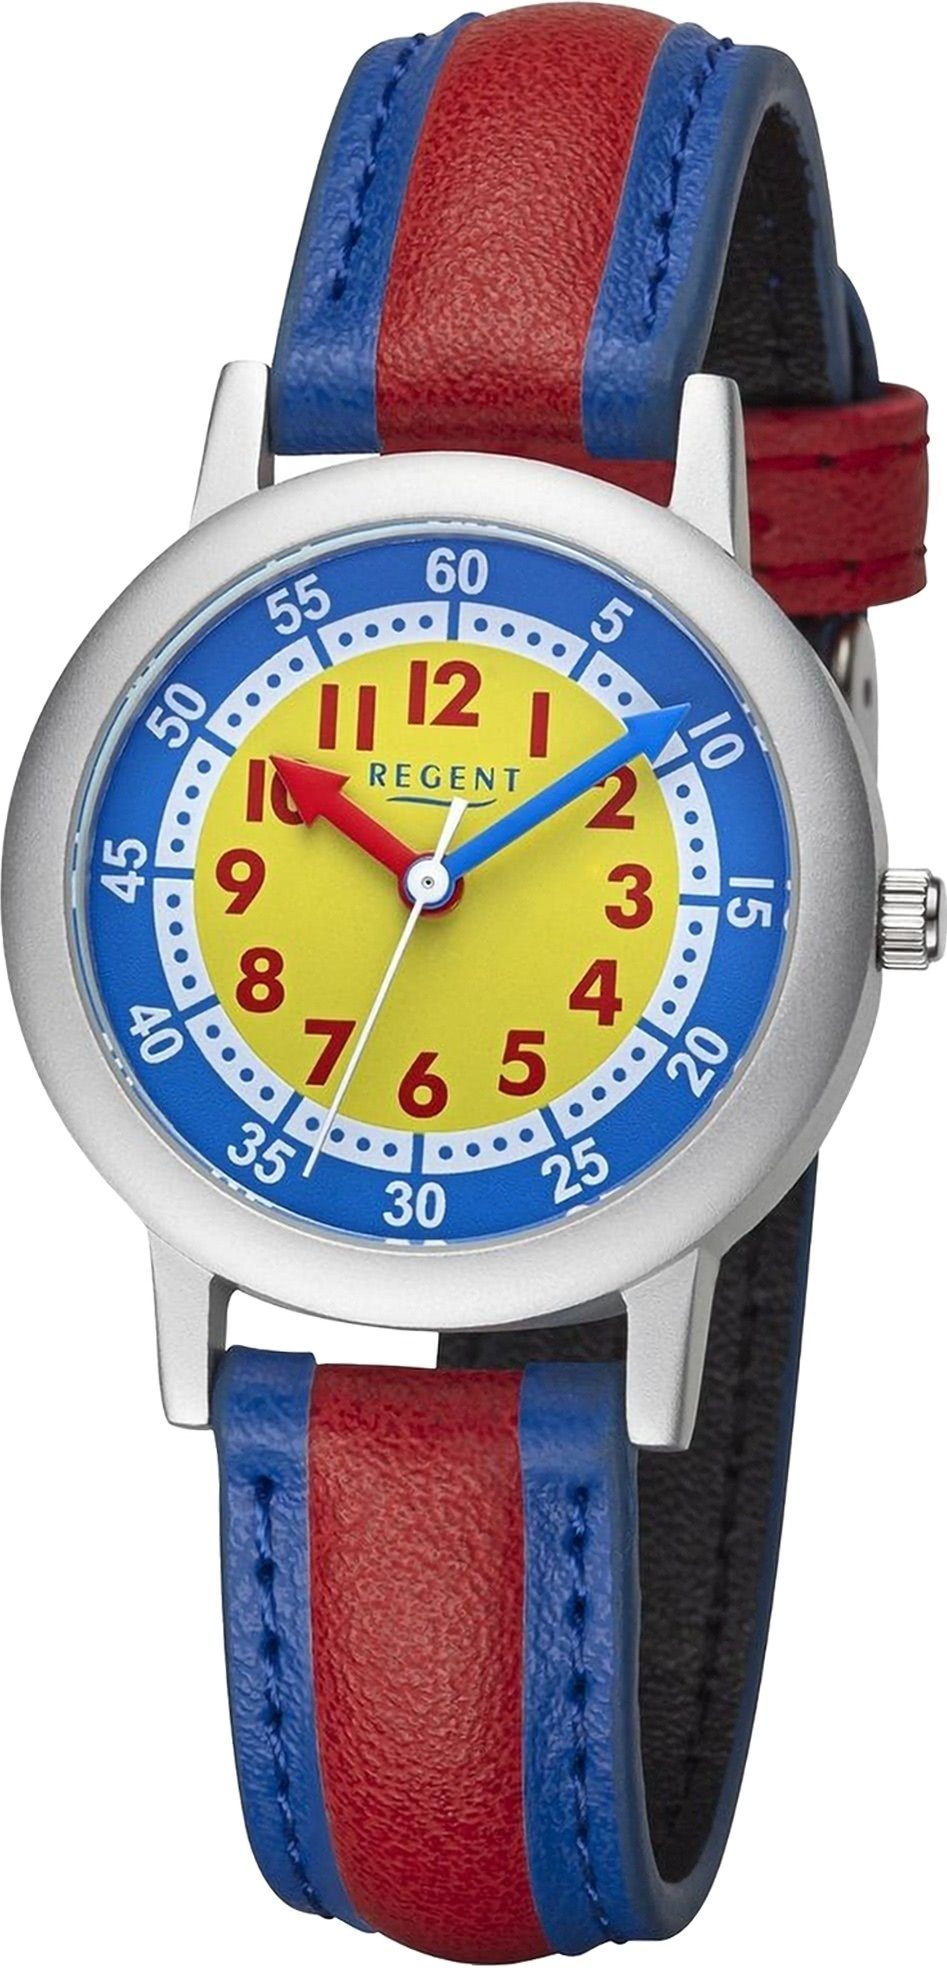 Regent 29,5mm) rot, Kinderuhr rundes Quarzuhr groß Regent Armbanduhr Analog, Kinderuhruhr blau, PURarmband Gehäuse, (ca.